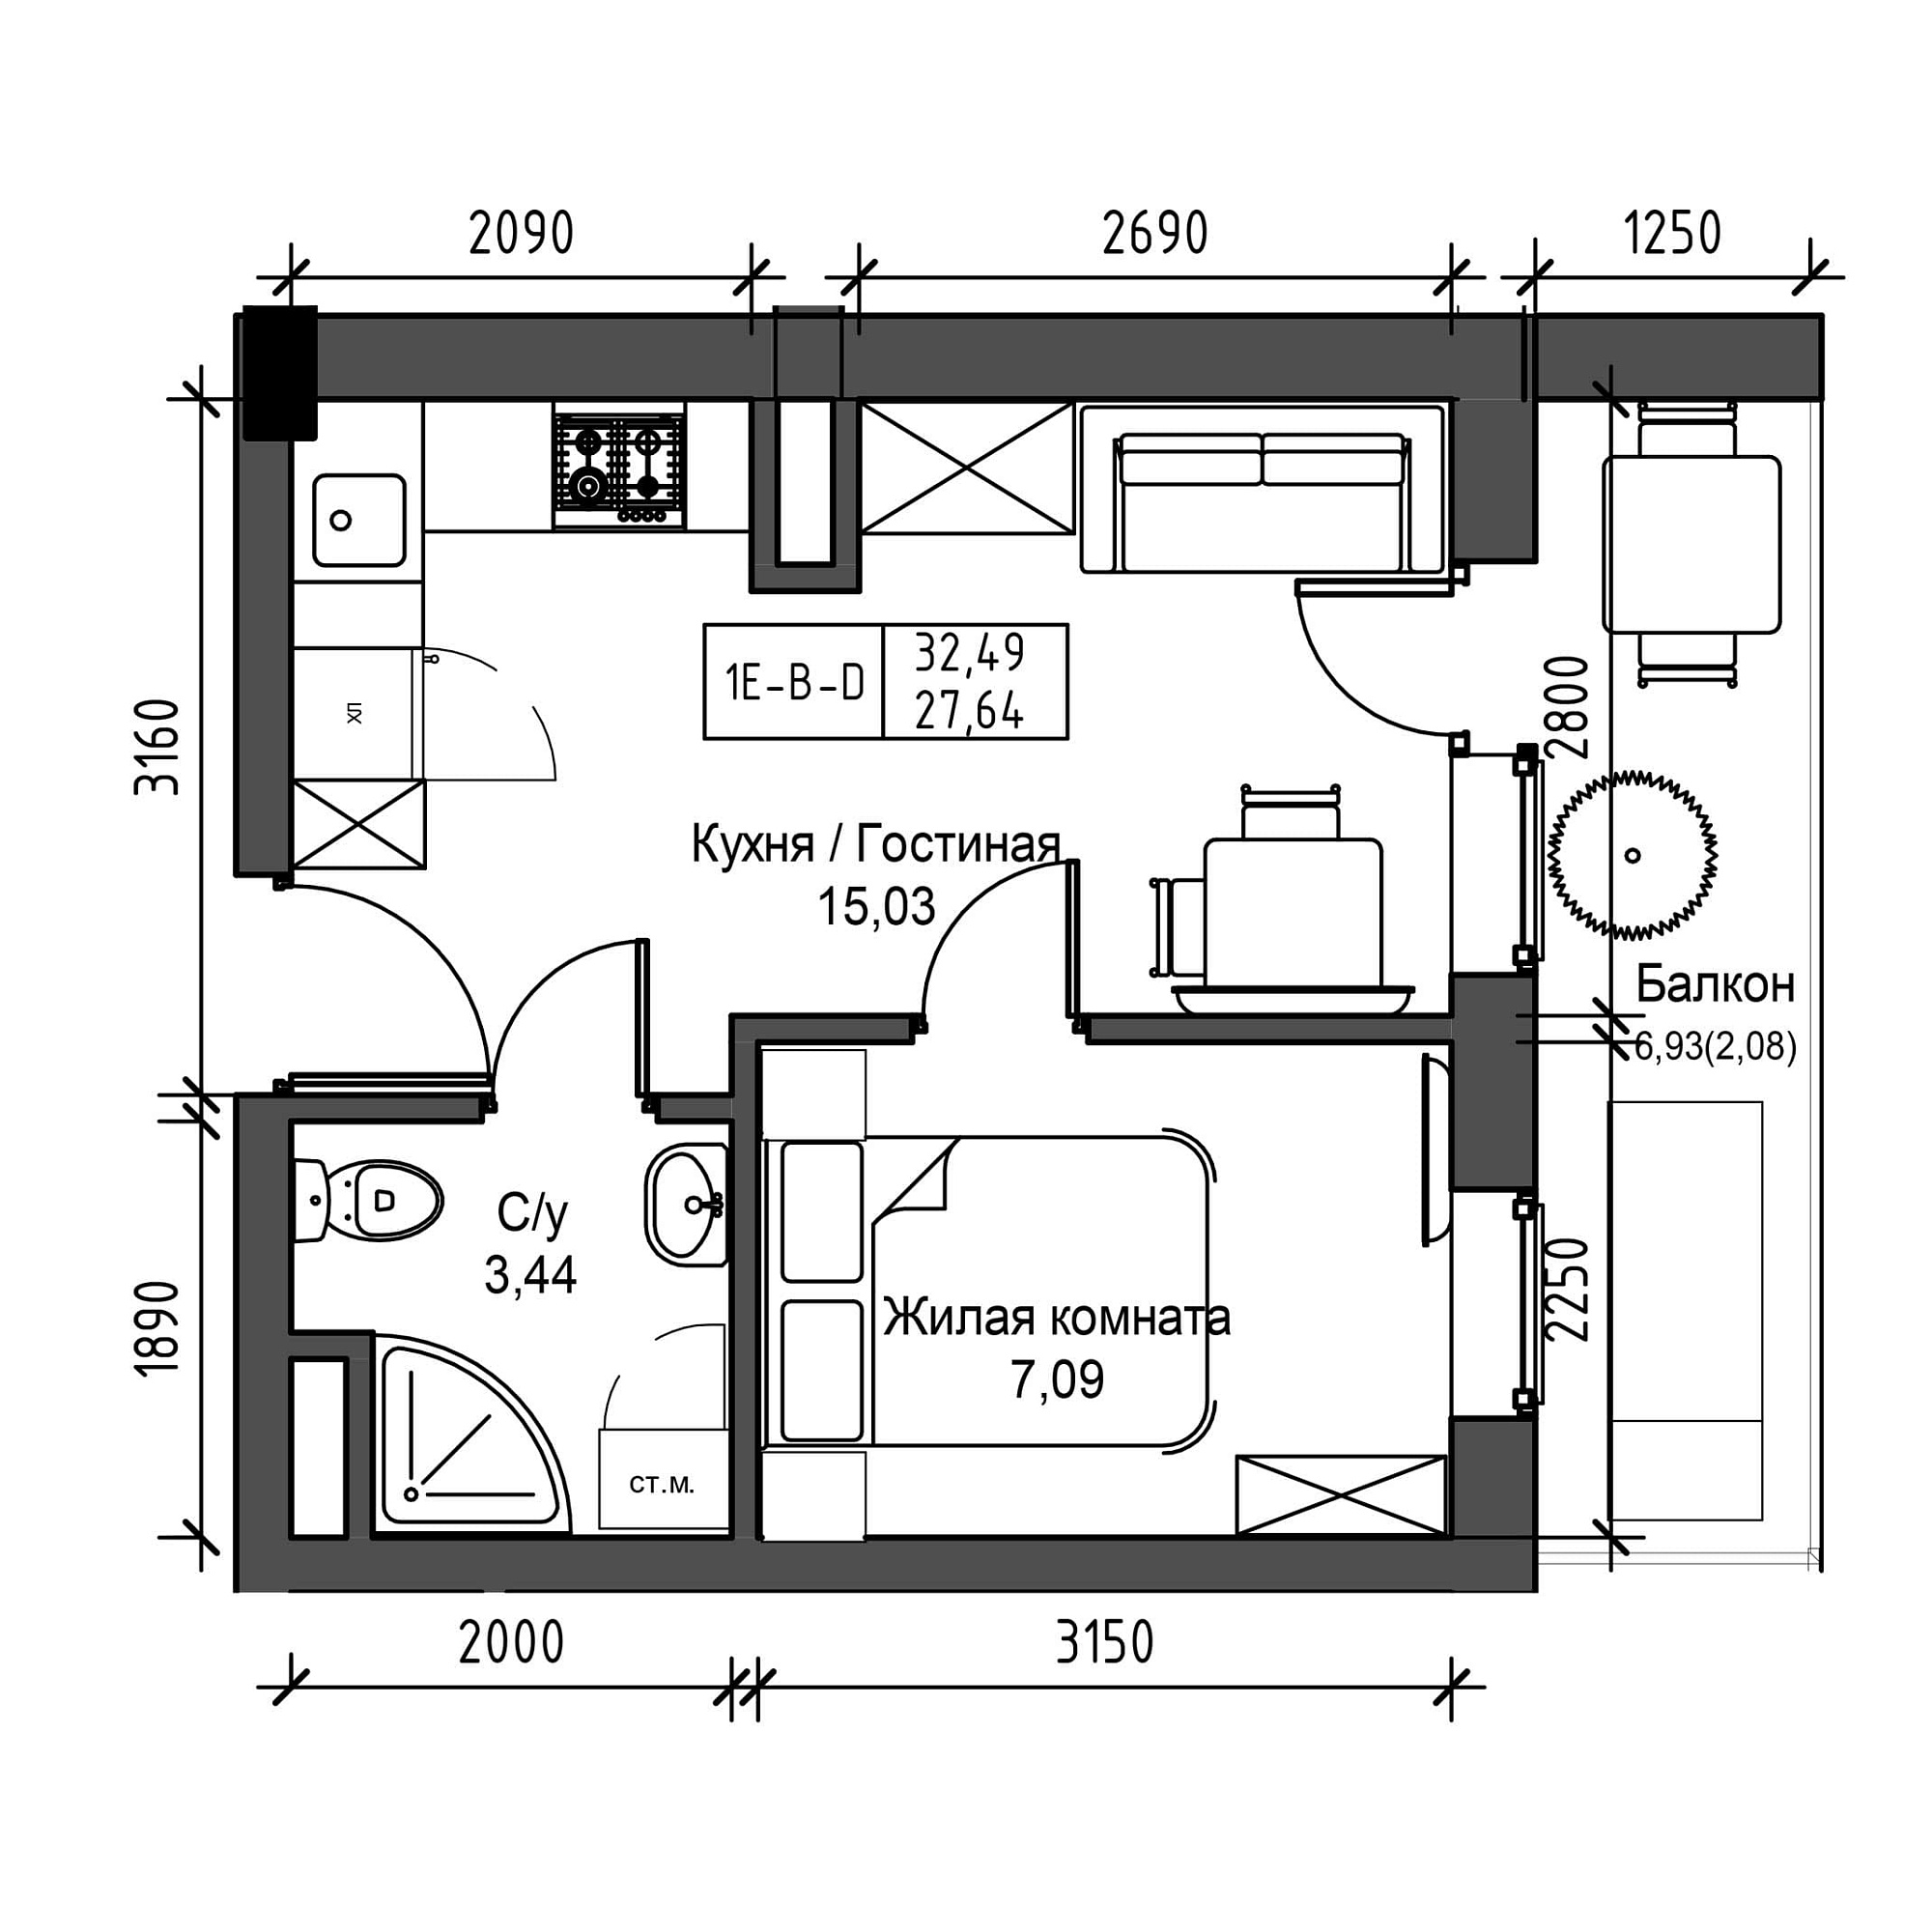 Планировка 1-к квартира площей 27.64м2, UM-001-06/0001.